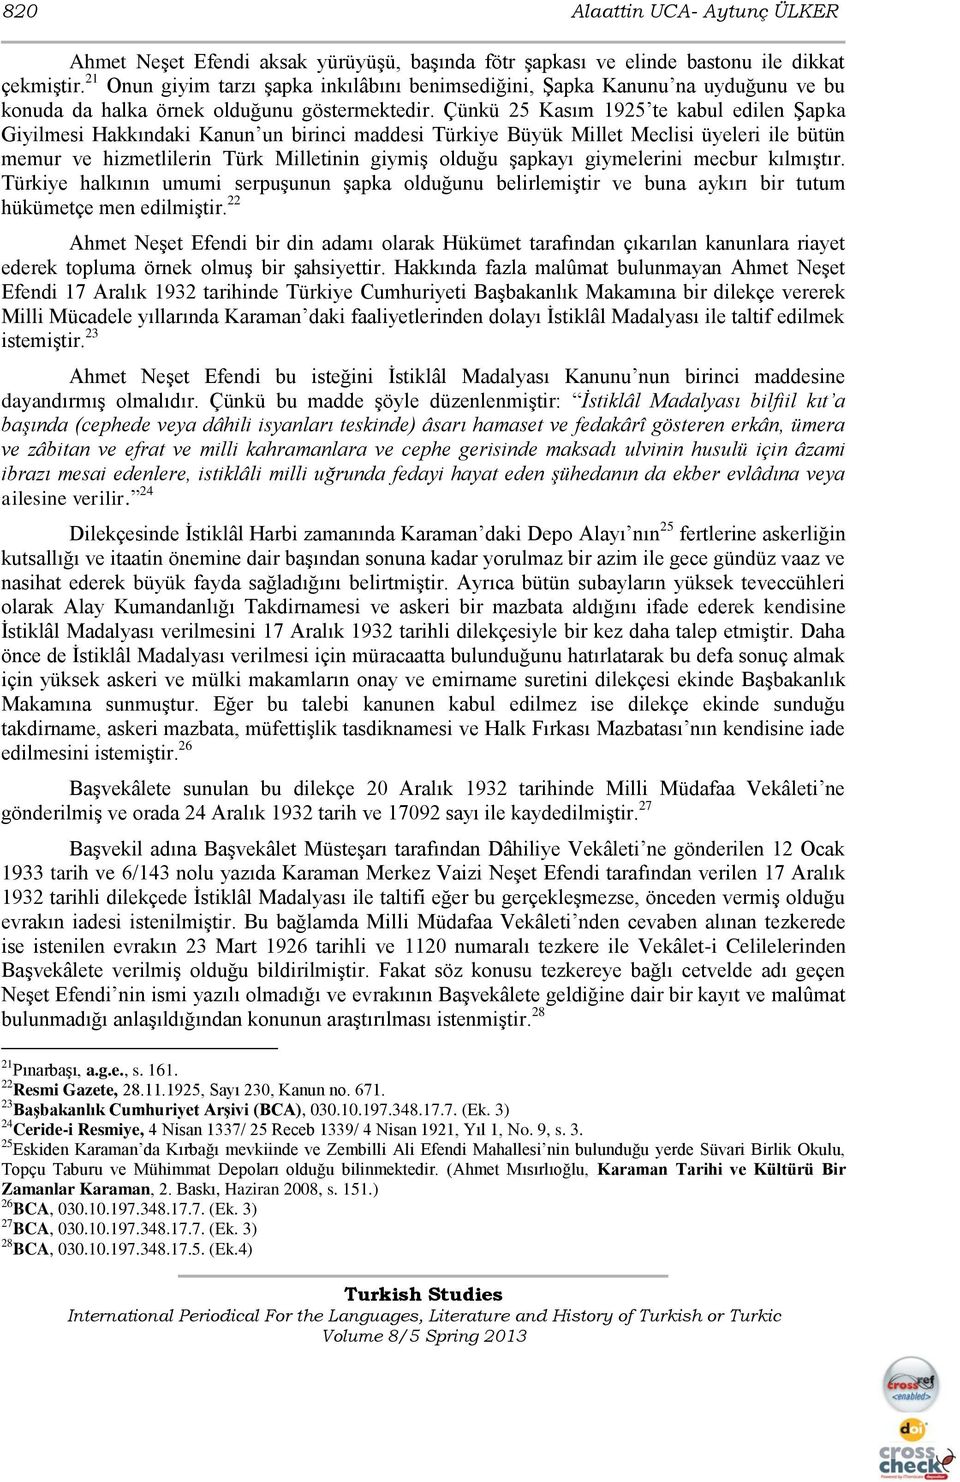 Çünkü 25 Kasım 1925 te kabul edilen ġapka Giyilmesi Hakkındaki Kanun un birinci maddesi Türkiye Büyük Millet Meclisi üyeleri ile bütün memur ve hizmetlilerin Türk Milletinin giymiģ olduğu Ģapkayı